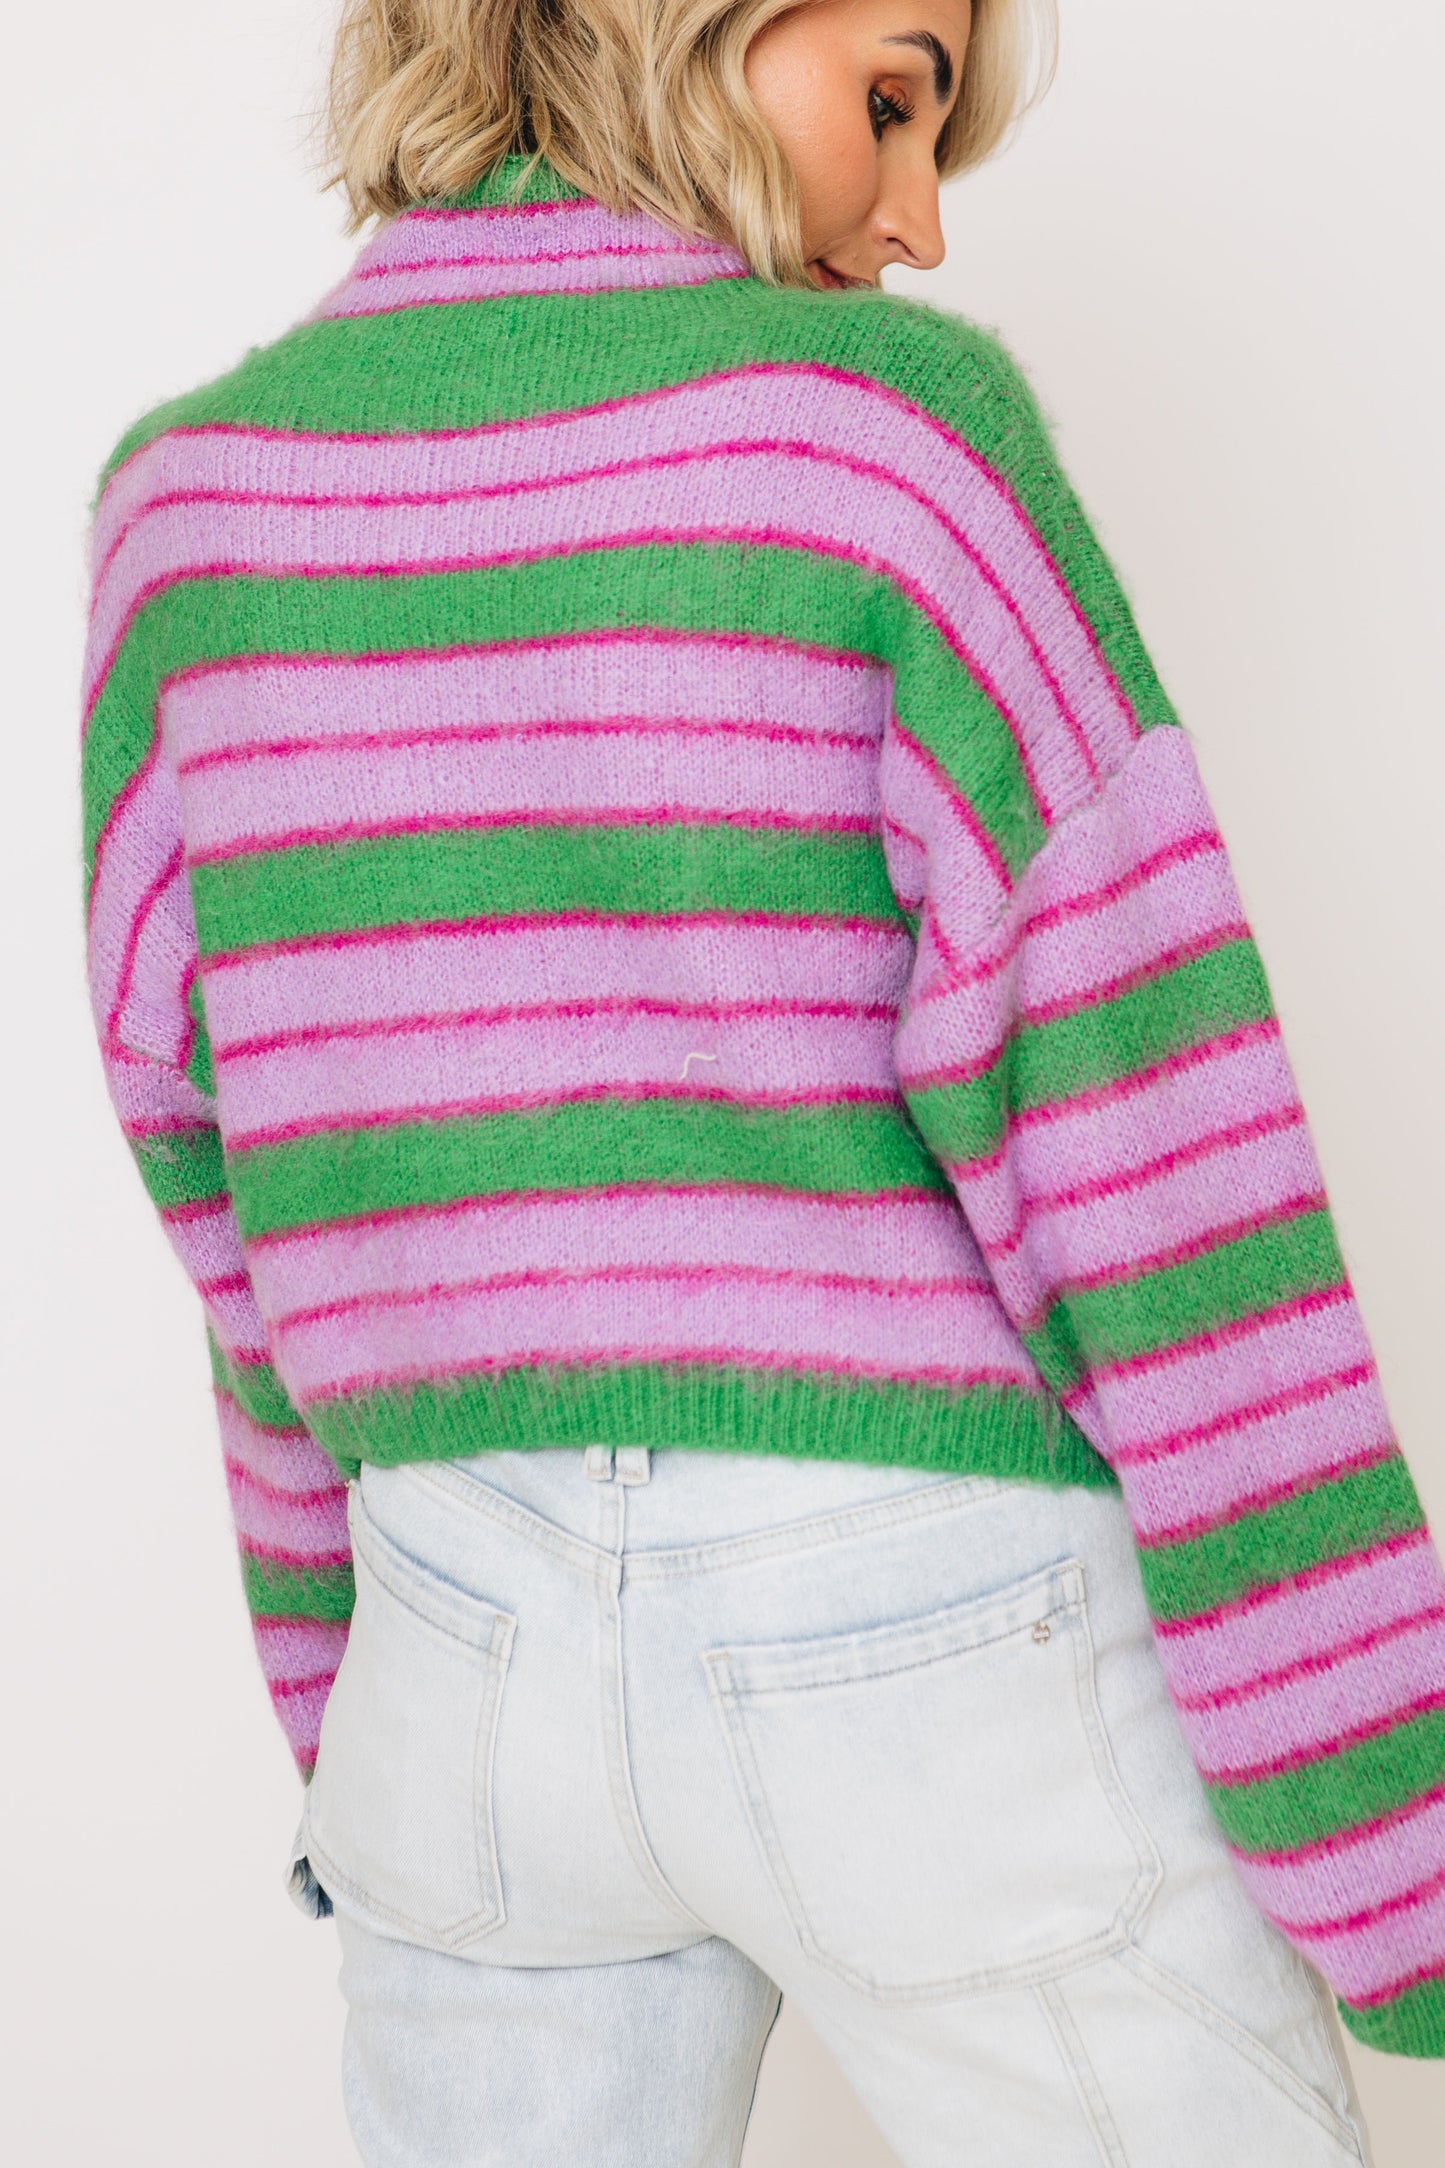 Lavender Fields Striped Turtleneck Sweater (S-L)